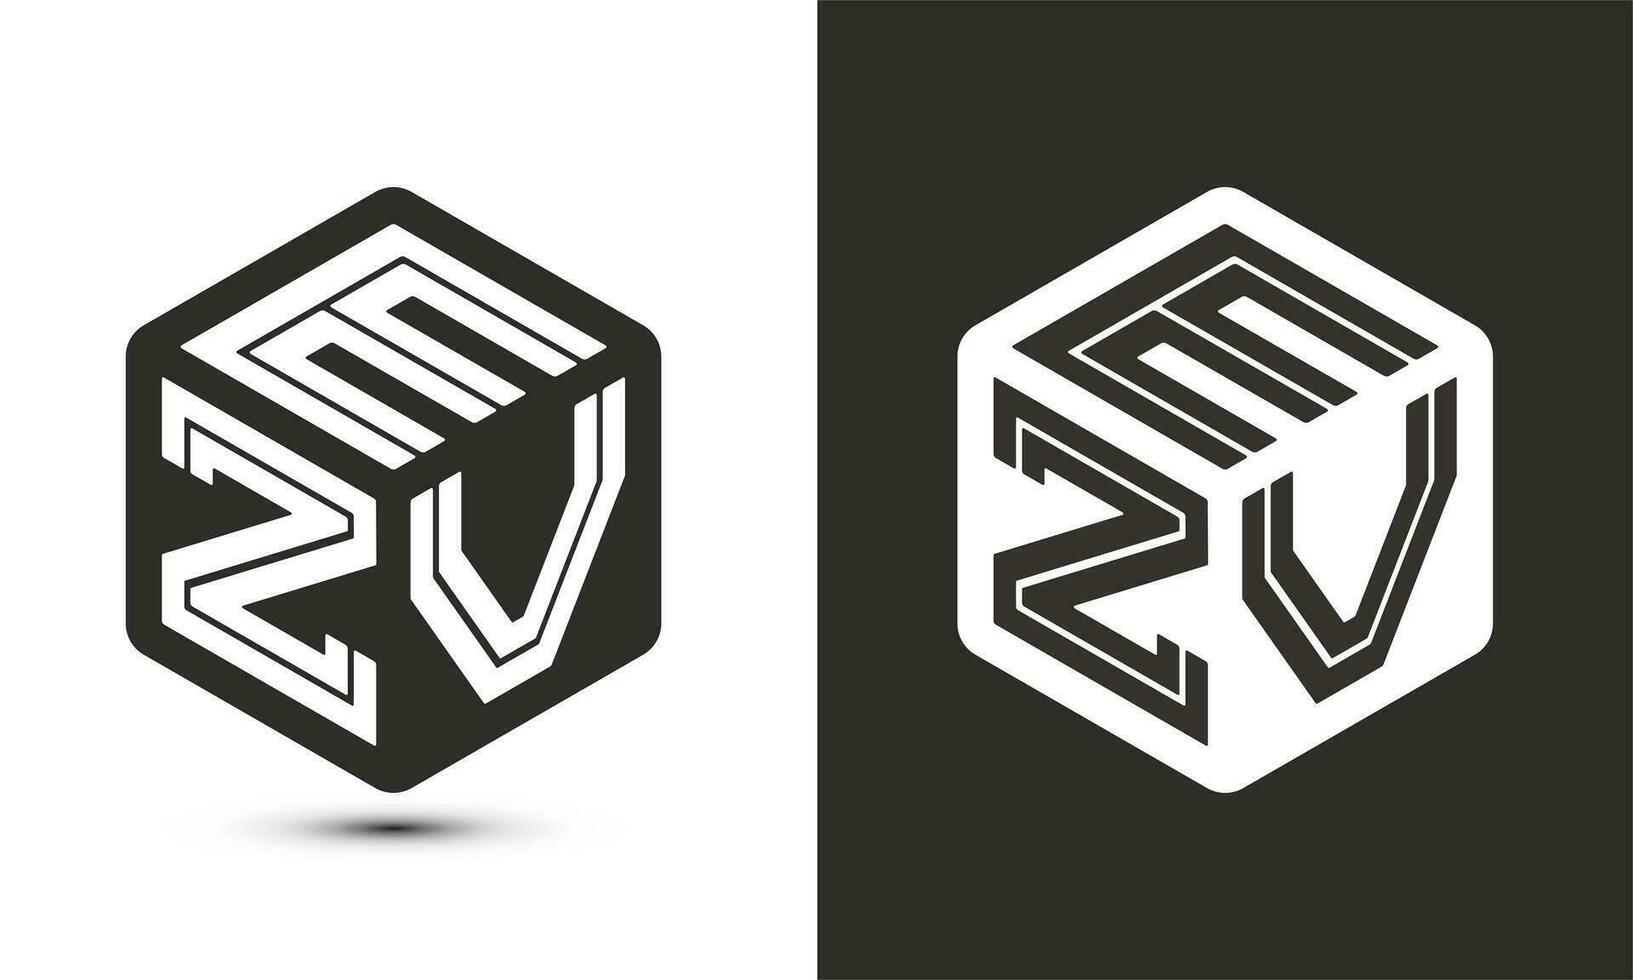 ezv brief logo ontwerp met illustrator kubus logo, vector logo modern alfabet doopvont overlappen stijl.